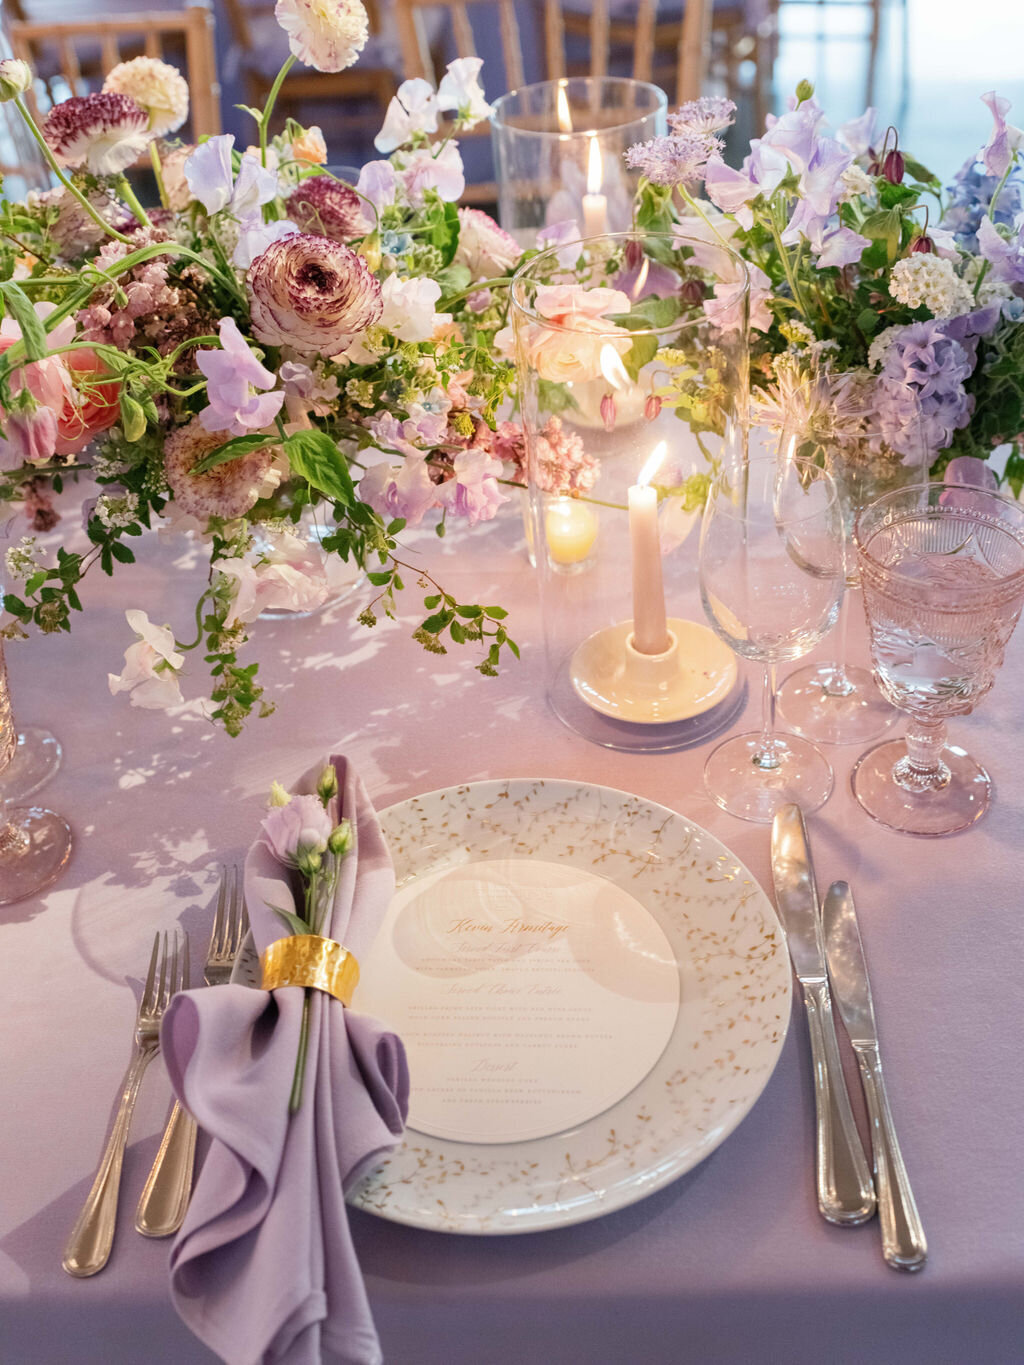 Glenmere Mansion Wedding  Table Decor Details